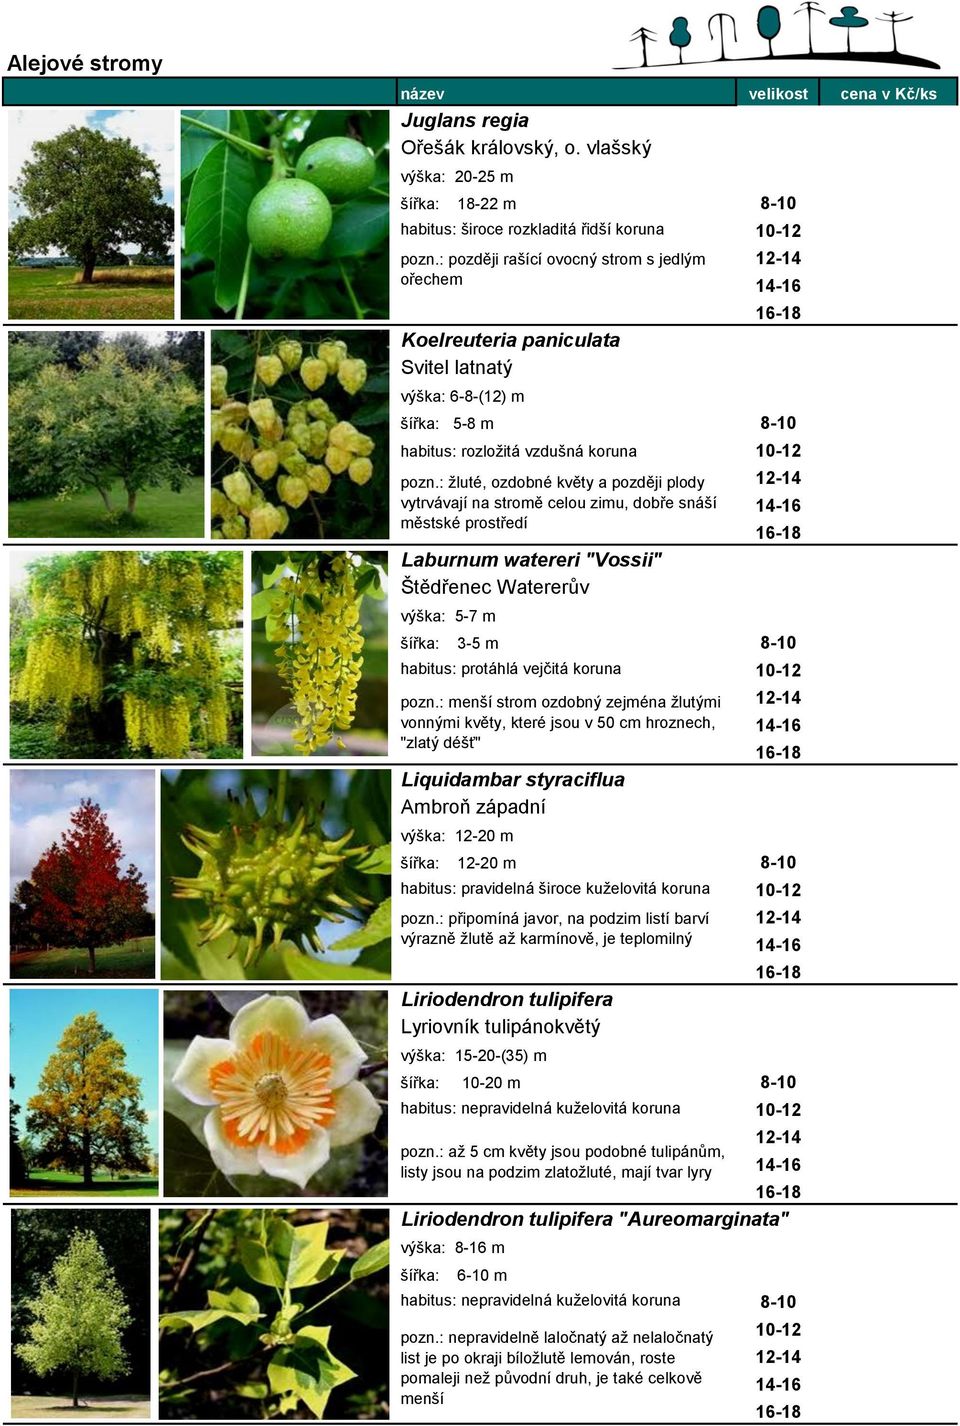 : žluté, ozdobné květy a později plody vytrvávají na stromě celou zimu, dobře snáší městské prostředí Laburnum watereri "Vossii" Štědřenec Watererův výška: 5-7 m 3-5 m 8-10 habitus: protáhlá vejčitá